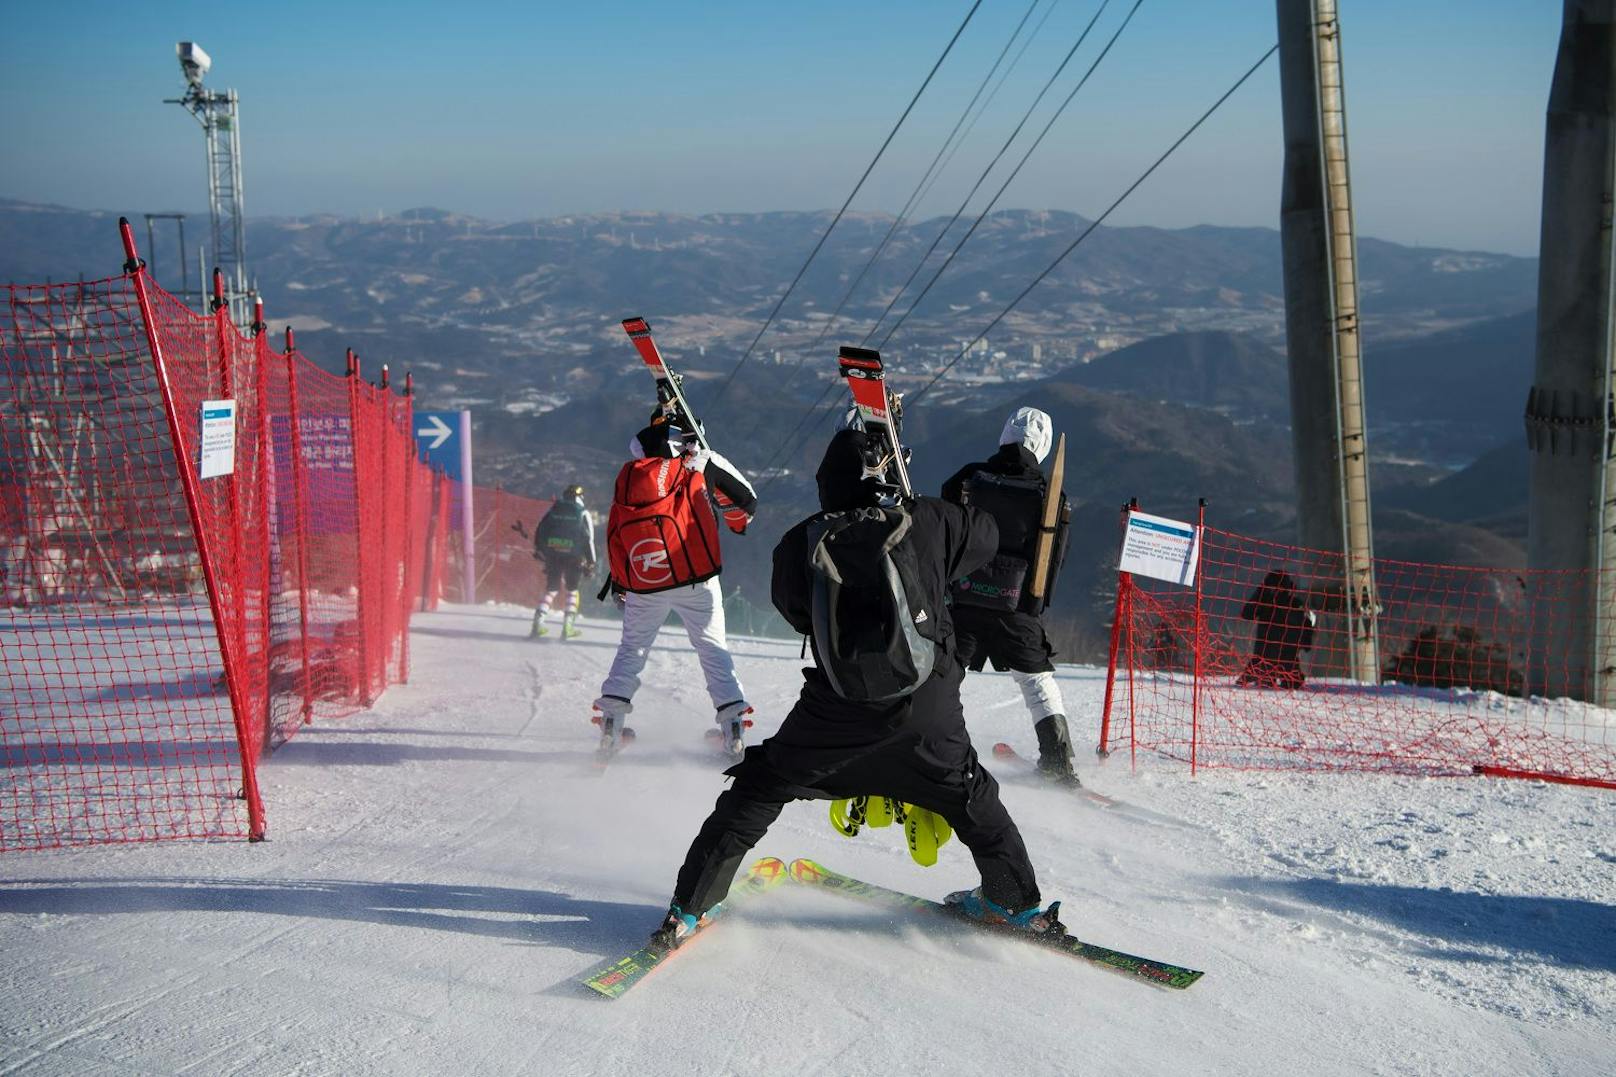 Corona-Cluster in Tirol. 19 Skilehrer wurden positiv auf das Coronavirus getestet. Die Gesundheitsbehörden haben einen öffentlichen Aufruf gestartet.